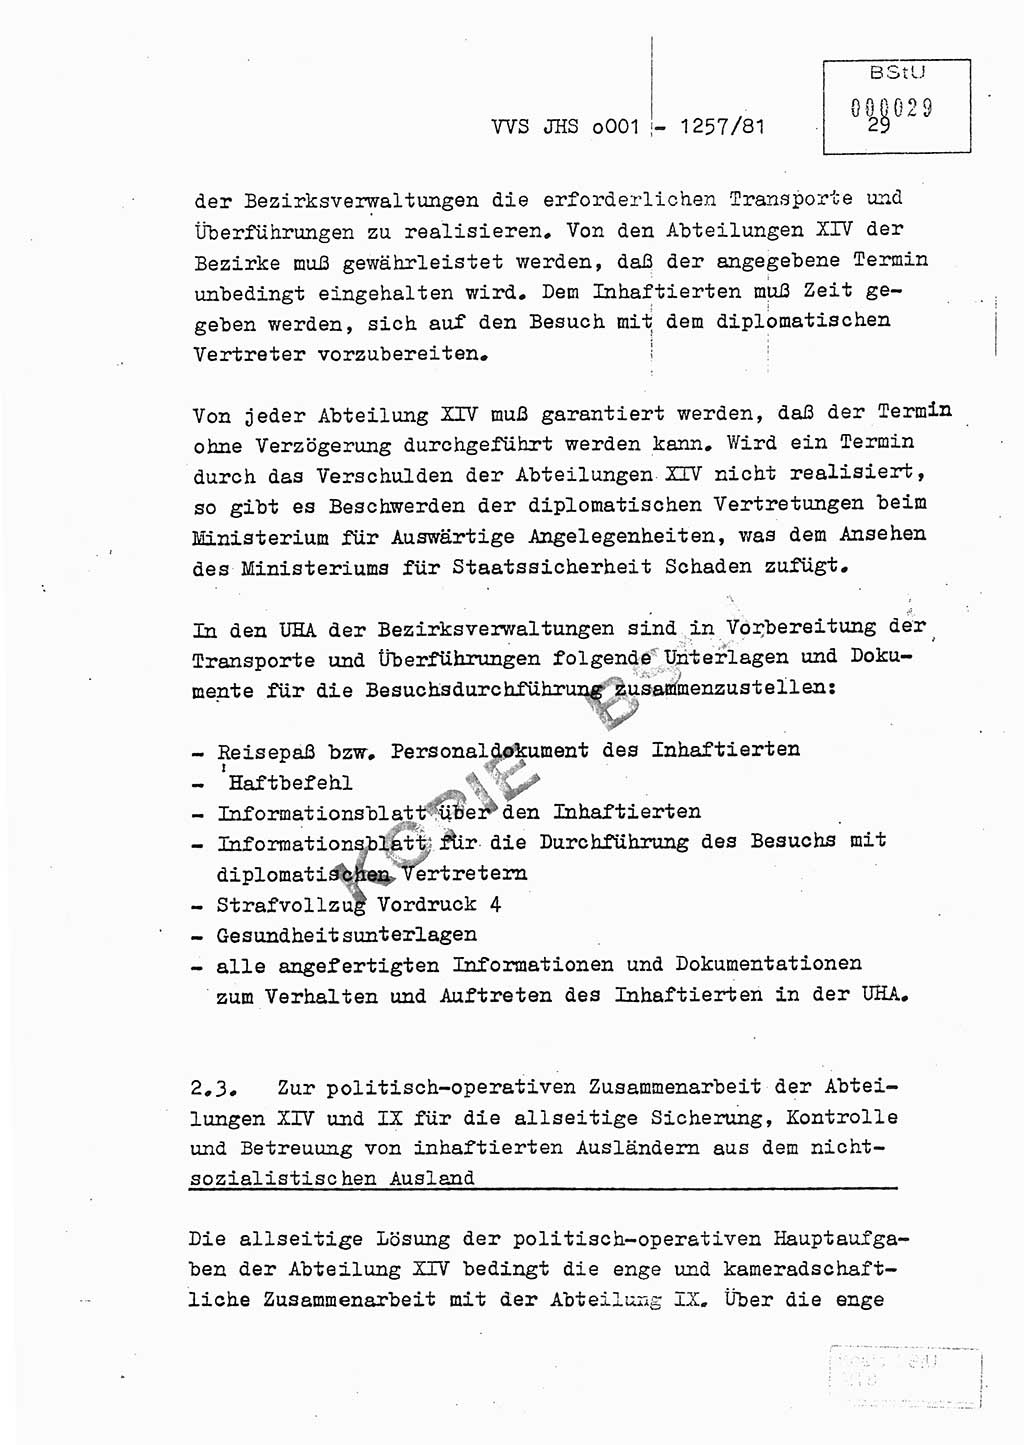 Fachschulabschlußarbeit Unterleutnant Dieter Möller (BV Rst. Abt. ⅩⅣ), Ministerium für Staatssicherheit (MfS) [Deutsche Demokratische Republik (DDR)], Juristische Hochschule (JHS), Vertrauliche Verschlußsache (VVS) o001-1257/81, Potsdam 1982, Seite 29 (FS-Abschl.-Arb. MfS DDR JHS VVS o001-1257/81 1982, S. 29)